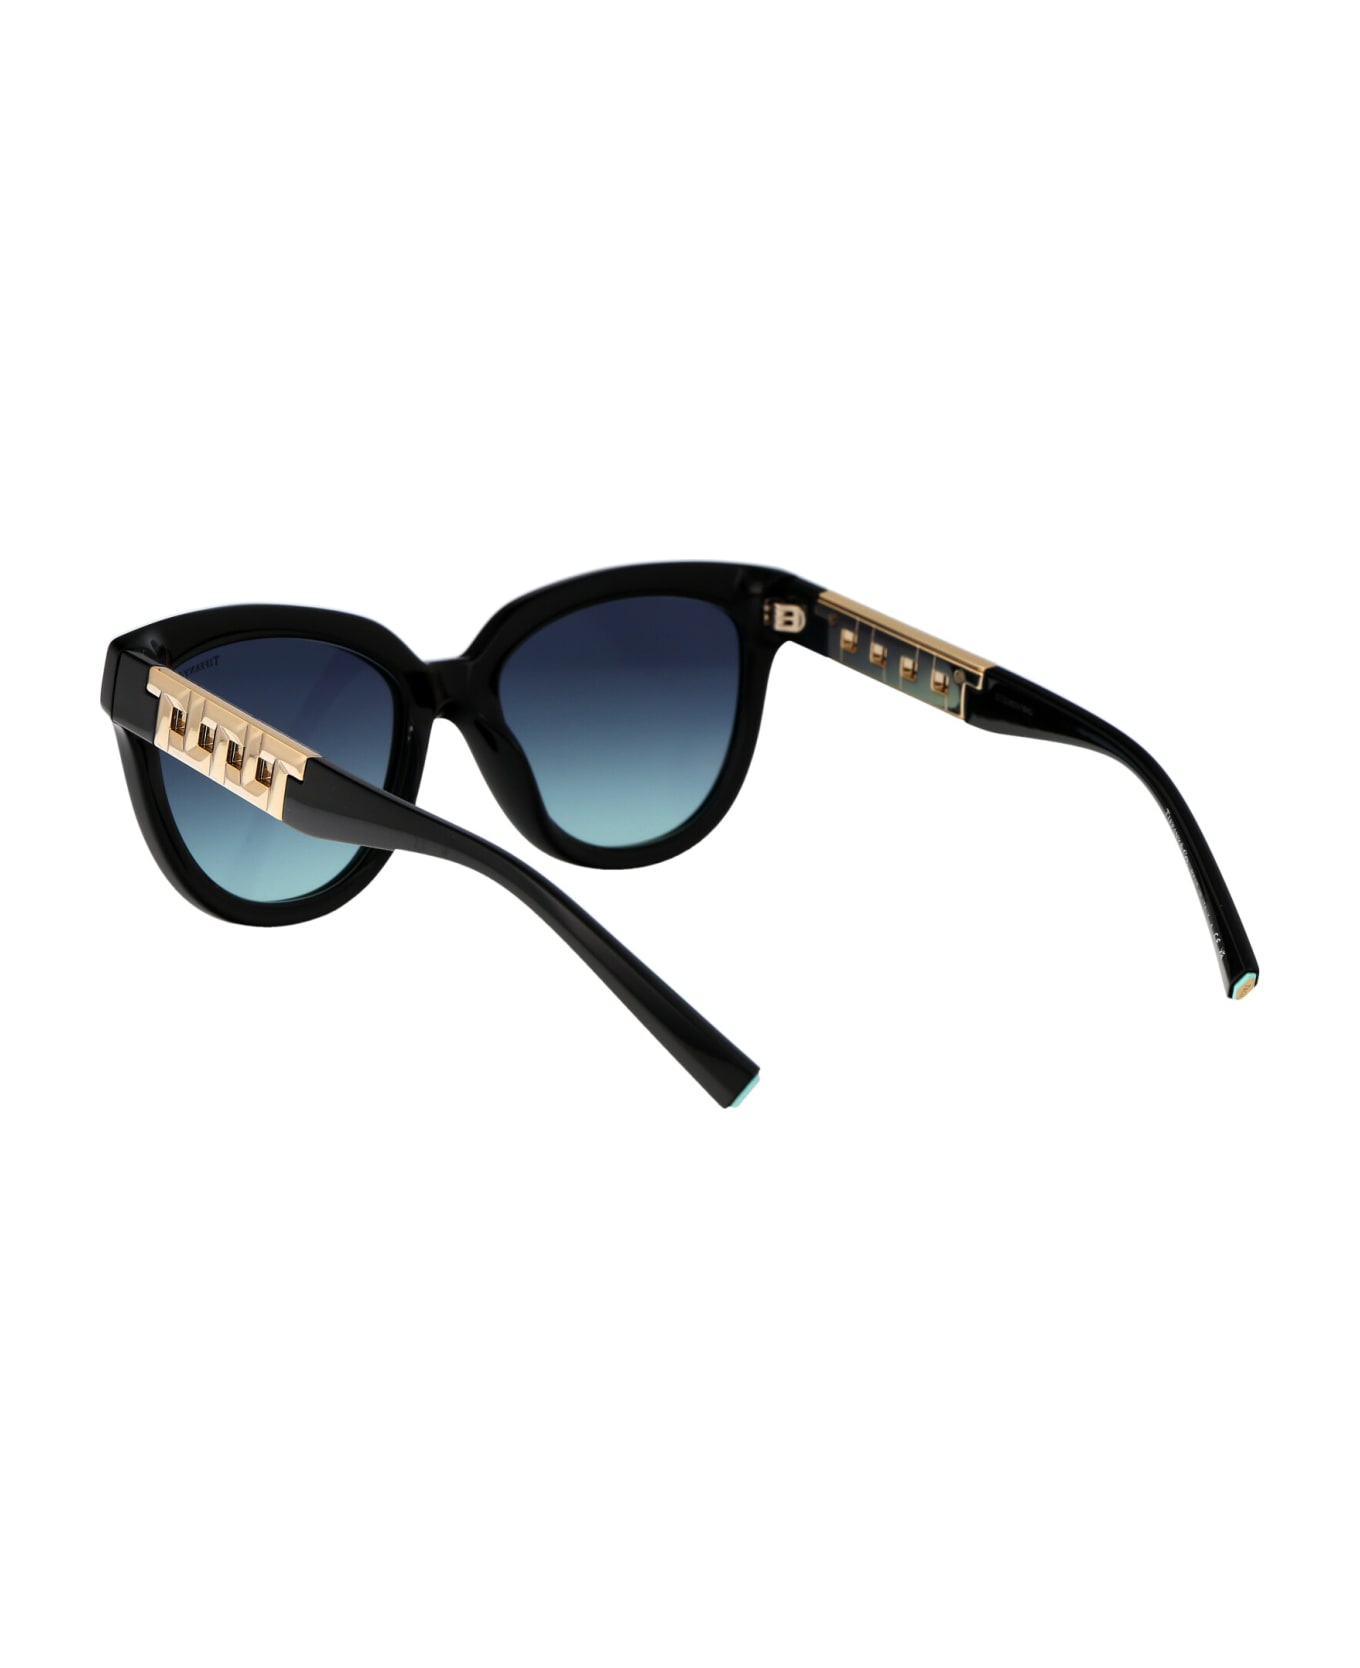 Tiffany & Co. 0tf4215 Sunglasses - 83429S Black